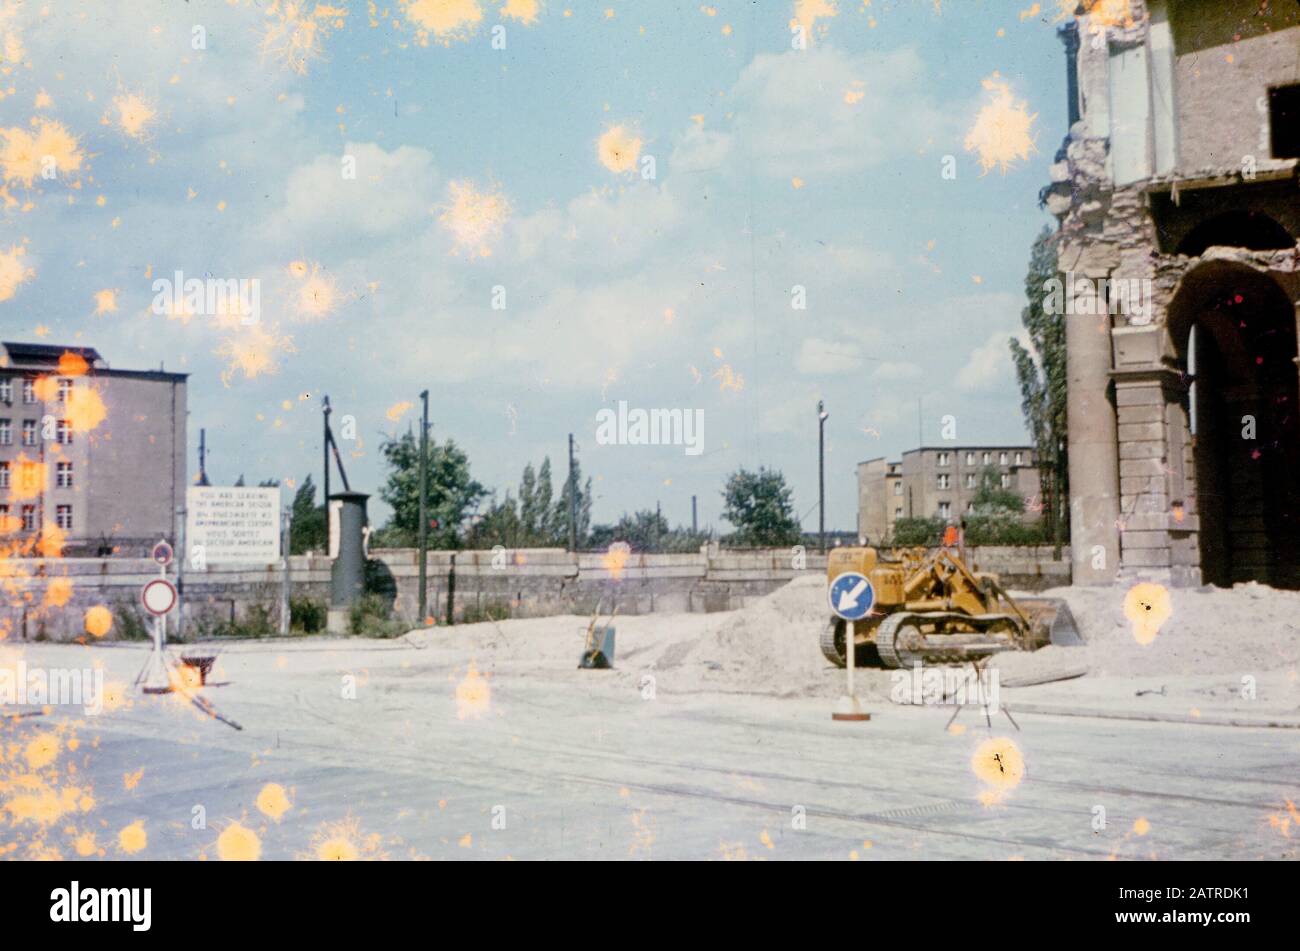 Photographie vernaculaire prise sur une transparence de film analogique de 35 mm, considérée comme représentant des structures près du mur de Berlin en Allemagne de l'Ouest, avec des dommages importants sur la photo originale, 1970. () Banque D'Images